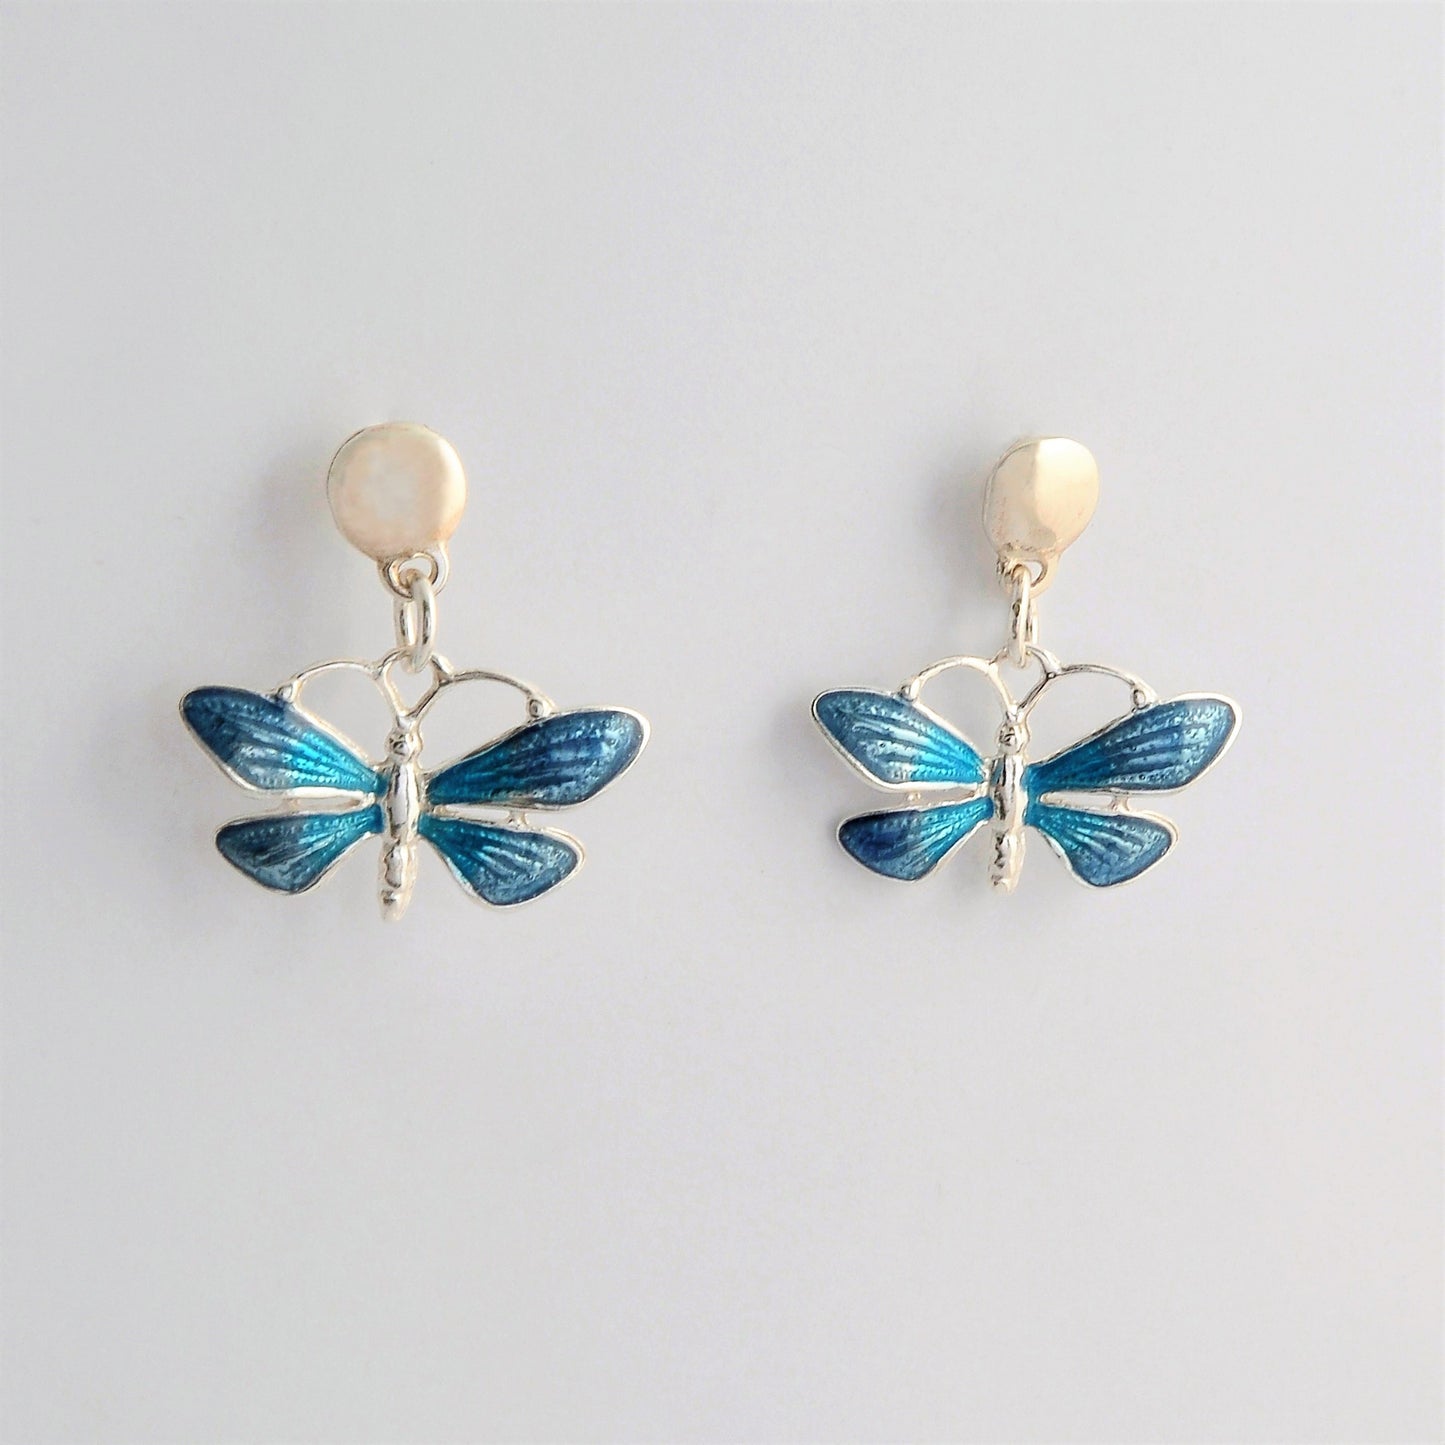 Blue butterflies silver earrings.